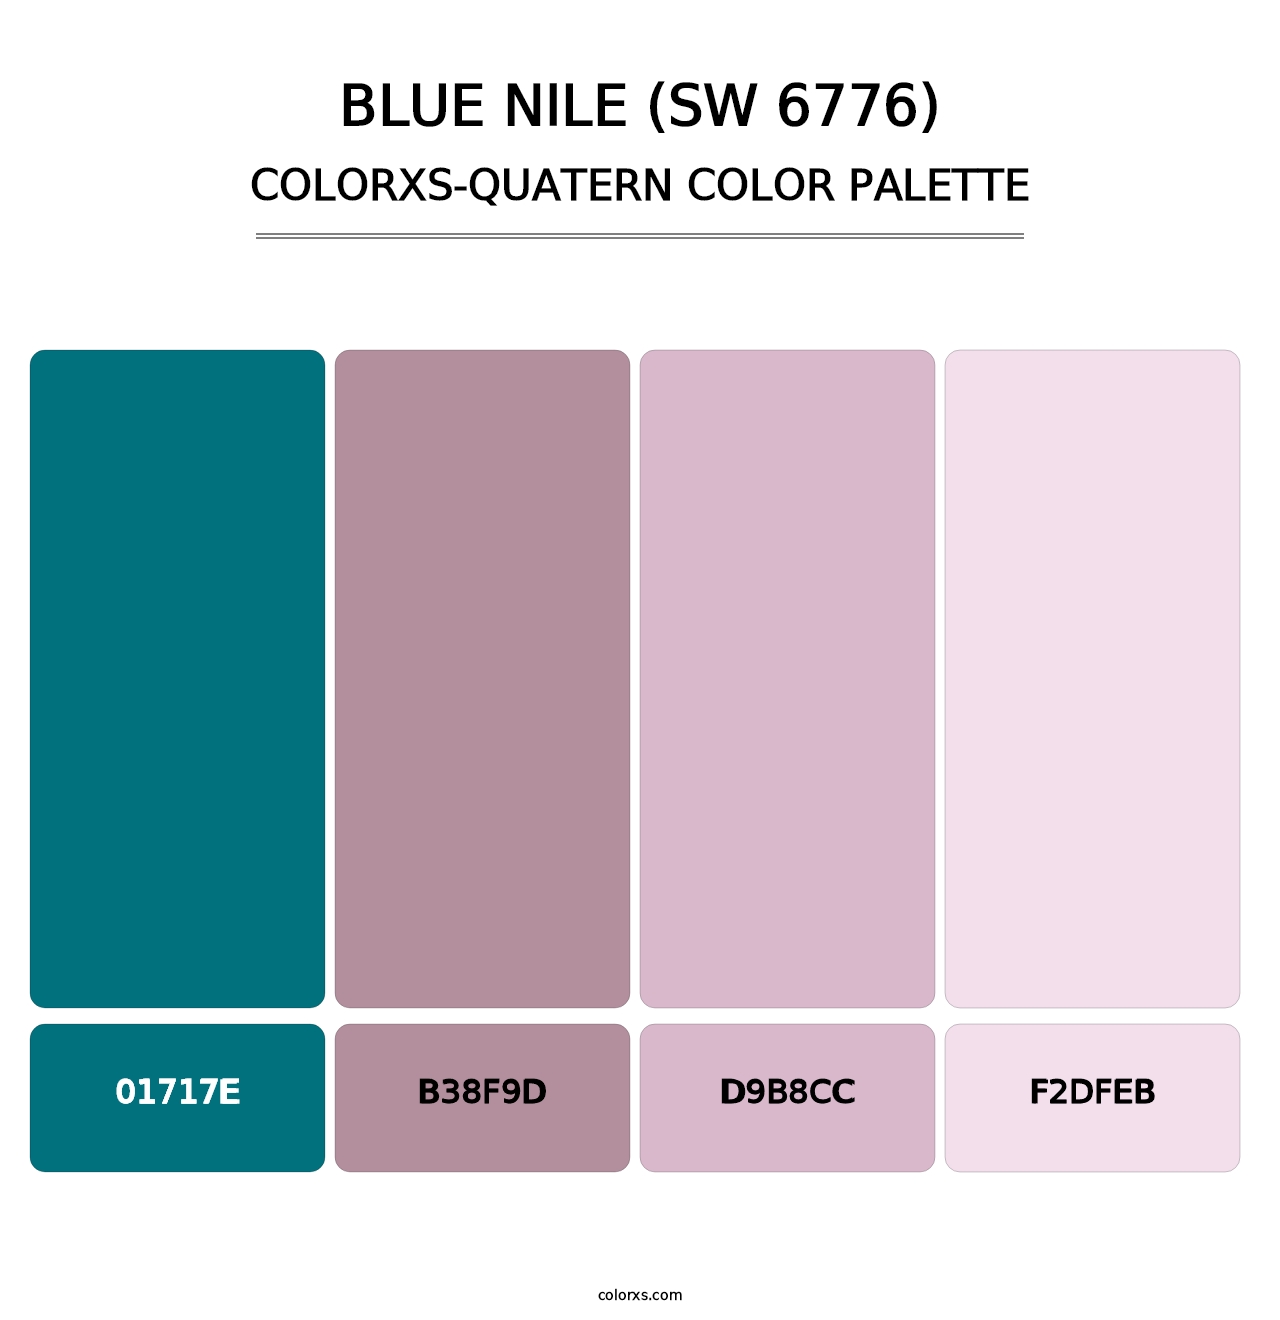 Blue Nile (SW 6776) - Colorxs Quatern Palette